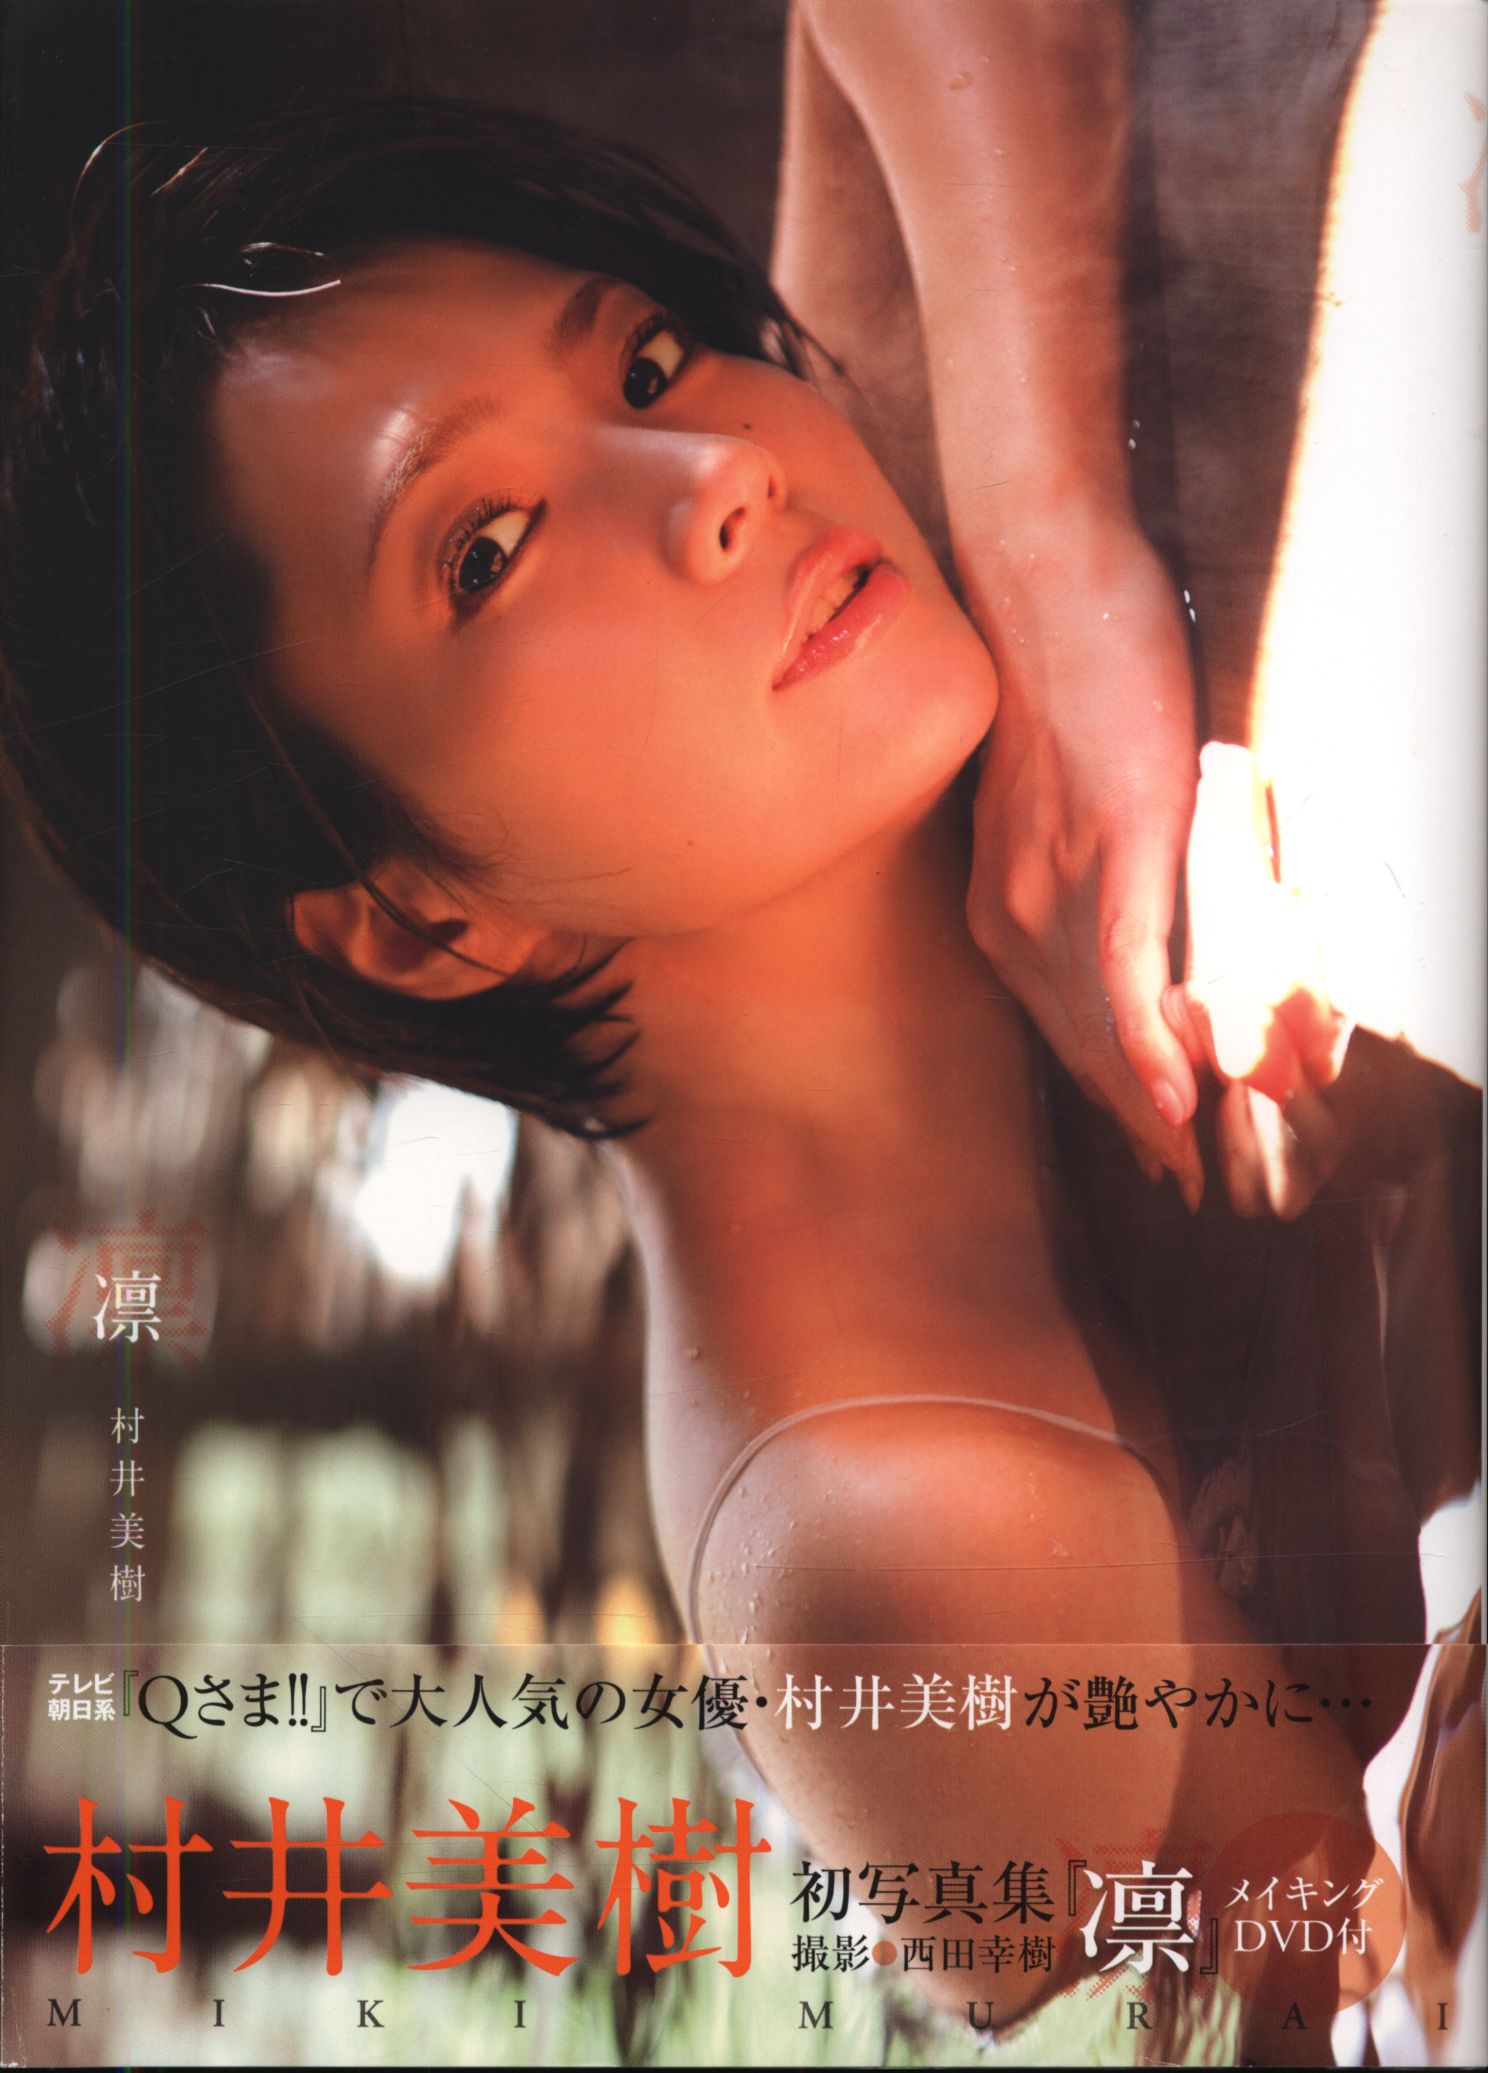 村井美樹 おかえり DVD - アイドル、イメージ